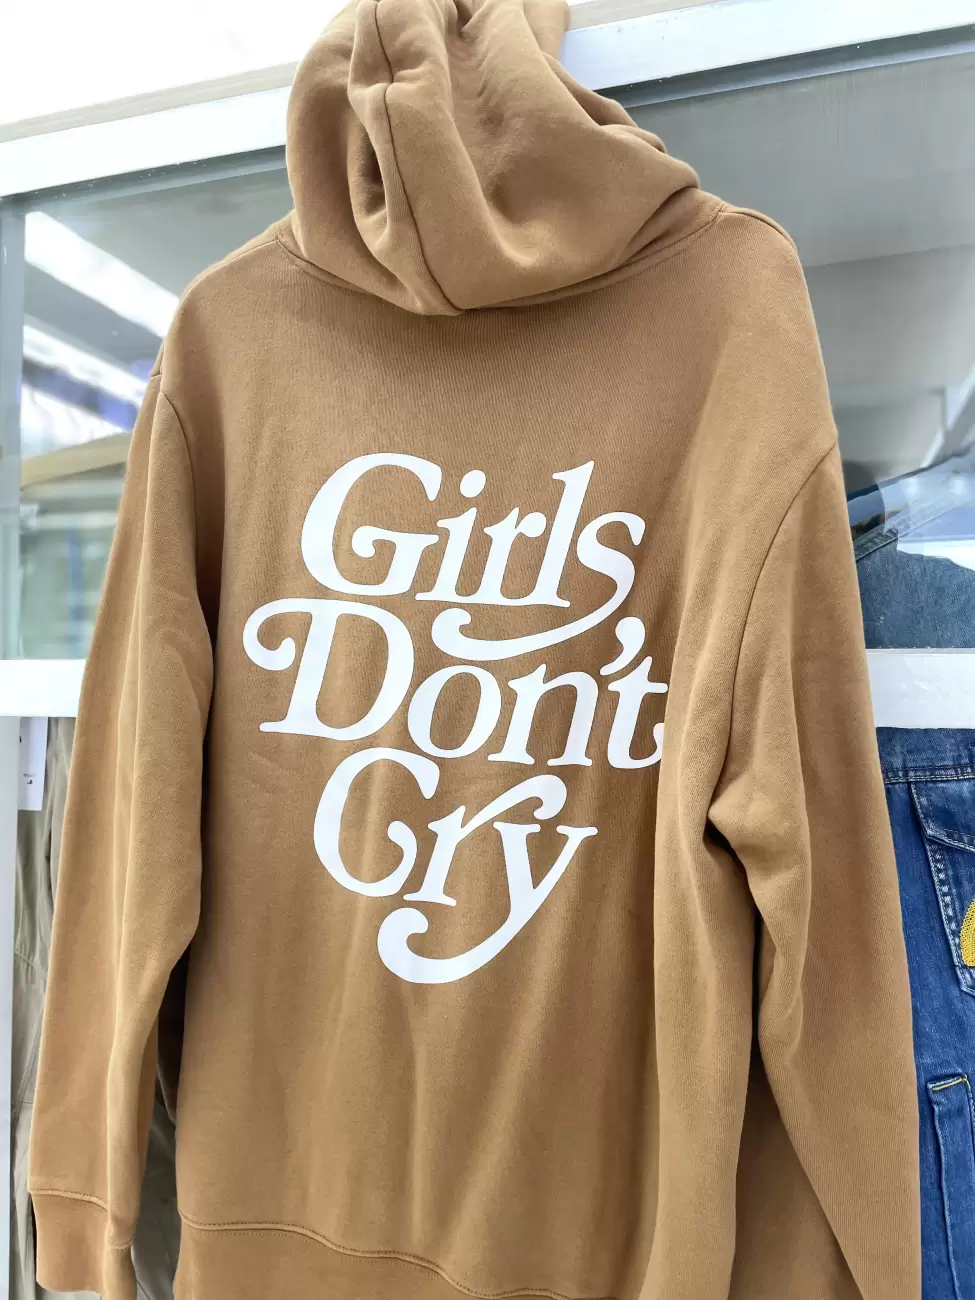 28000円でいかがでしょうかgirls don't cry hoodie brown XL